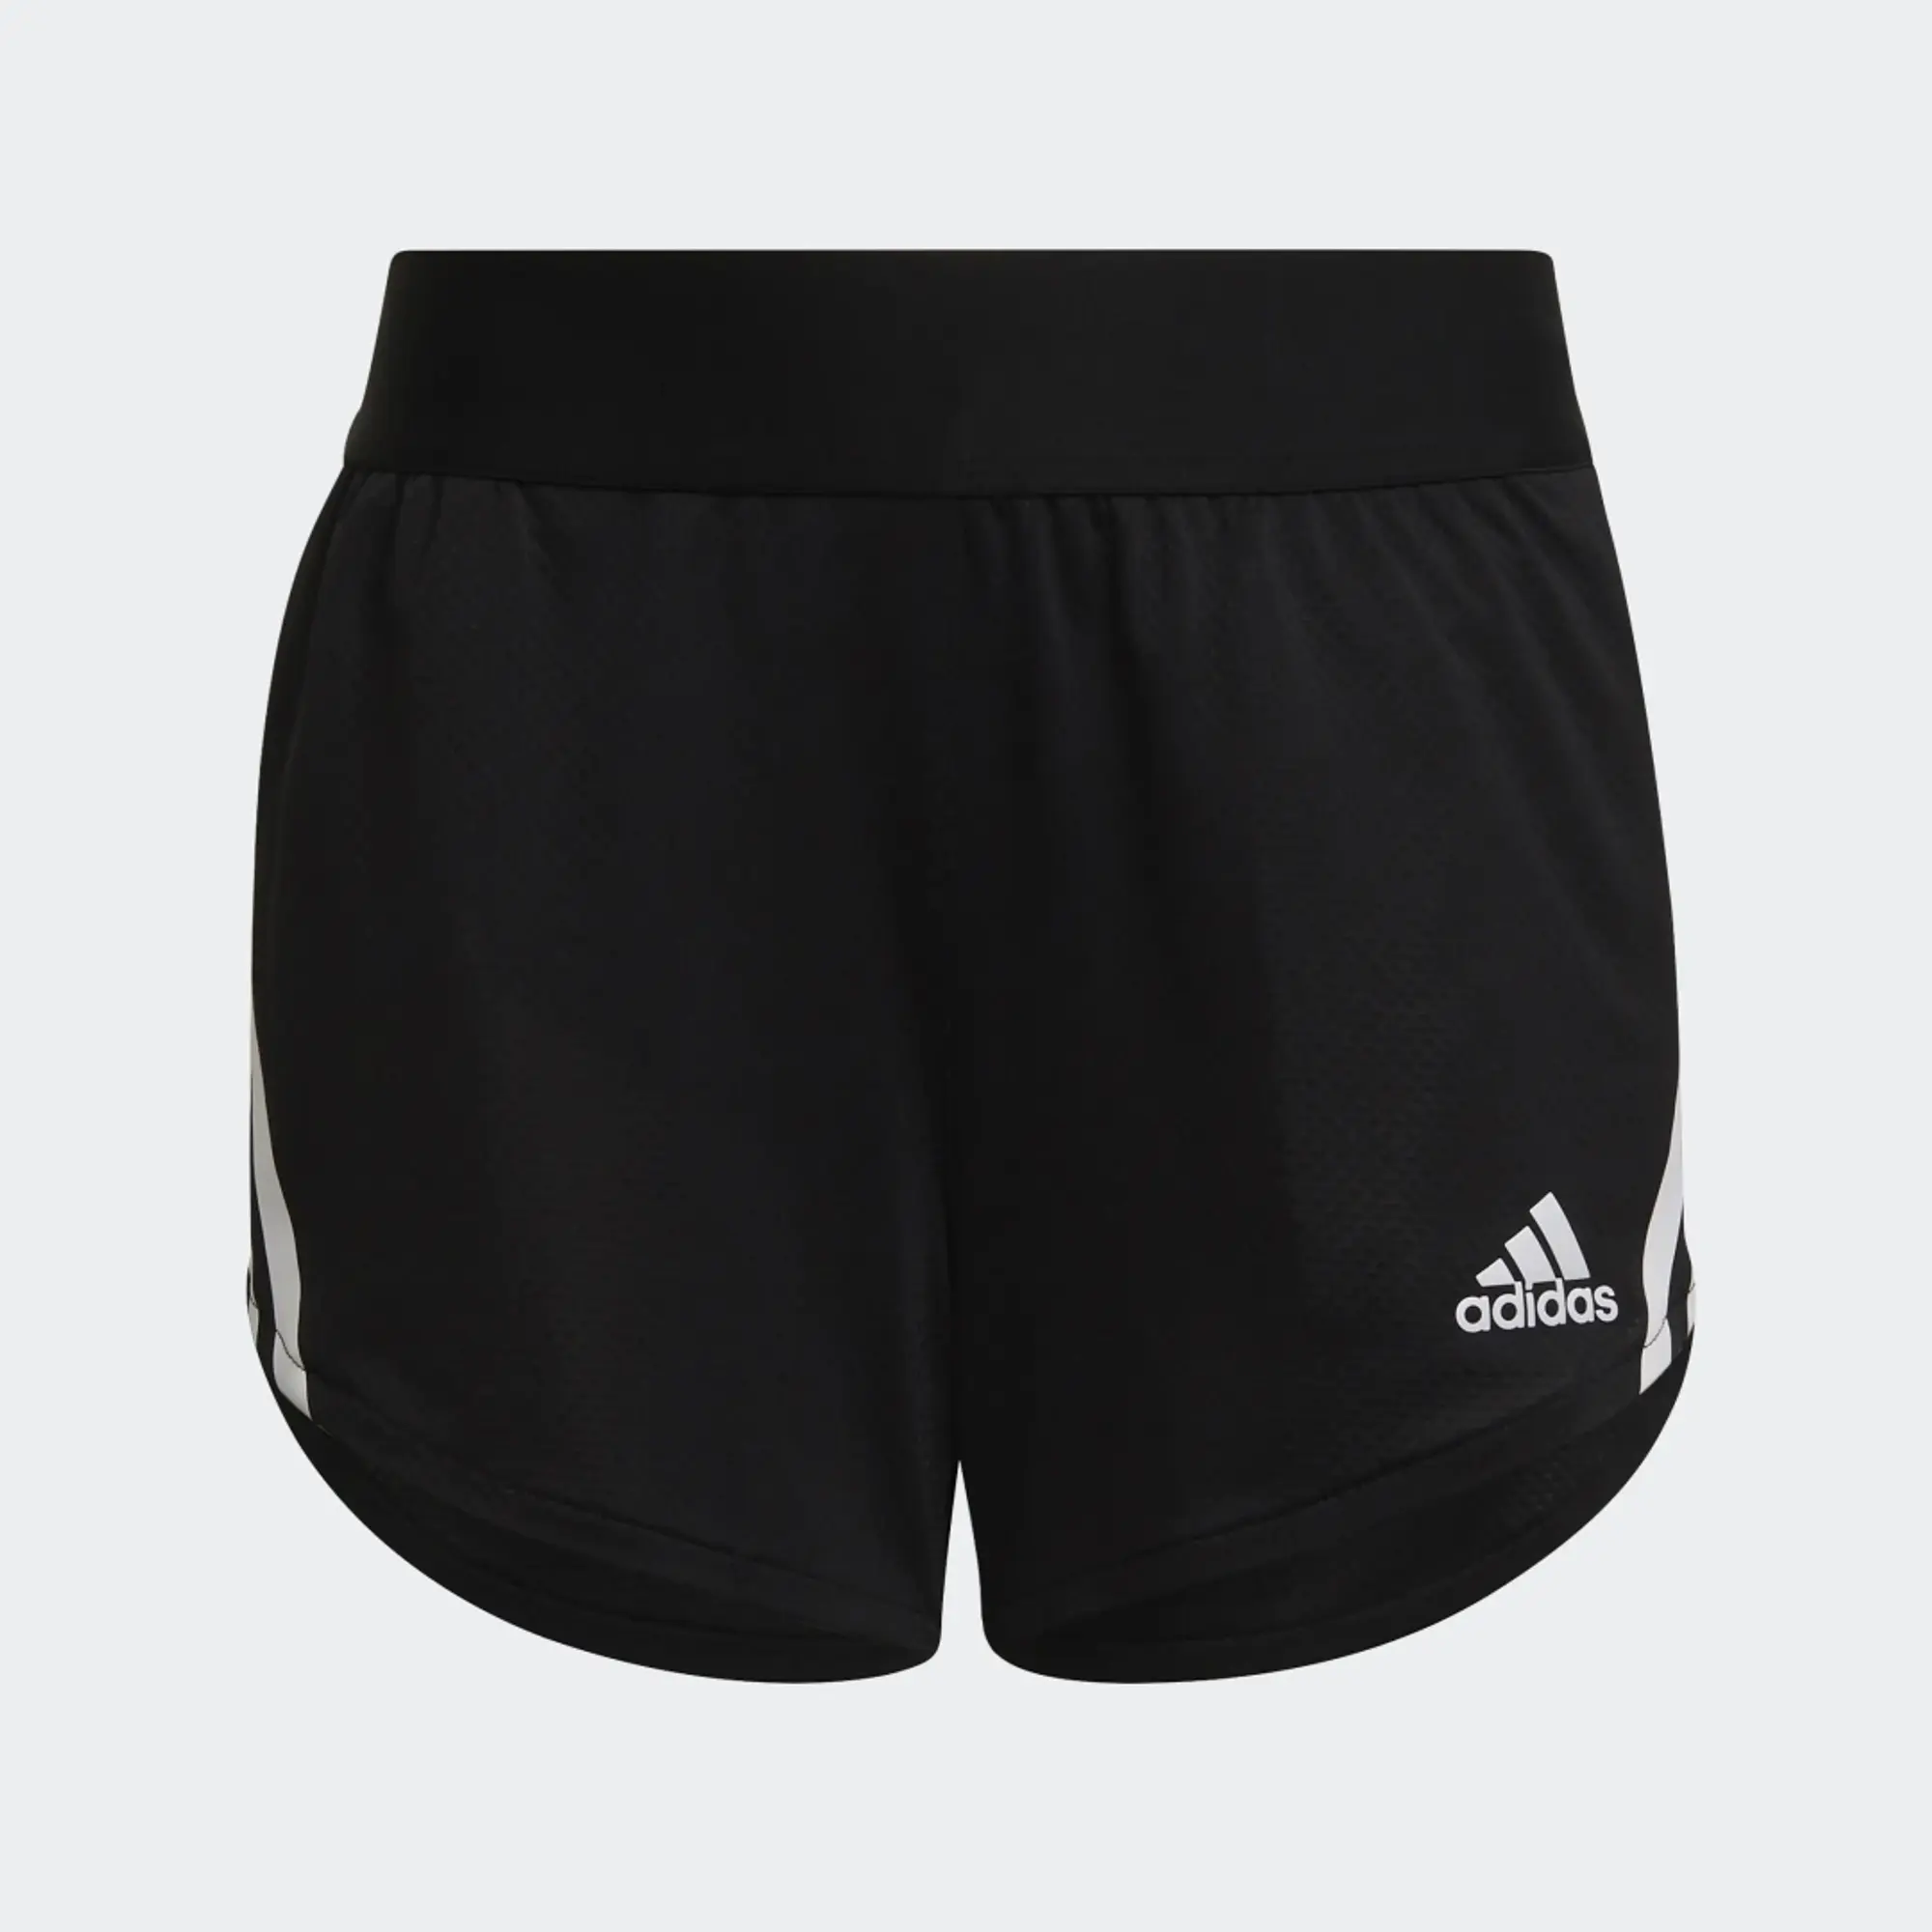 adidas 3S Knit Short Jn21 - Black